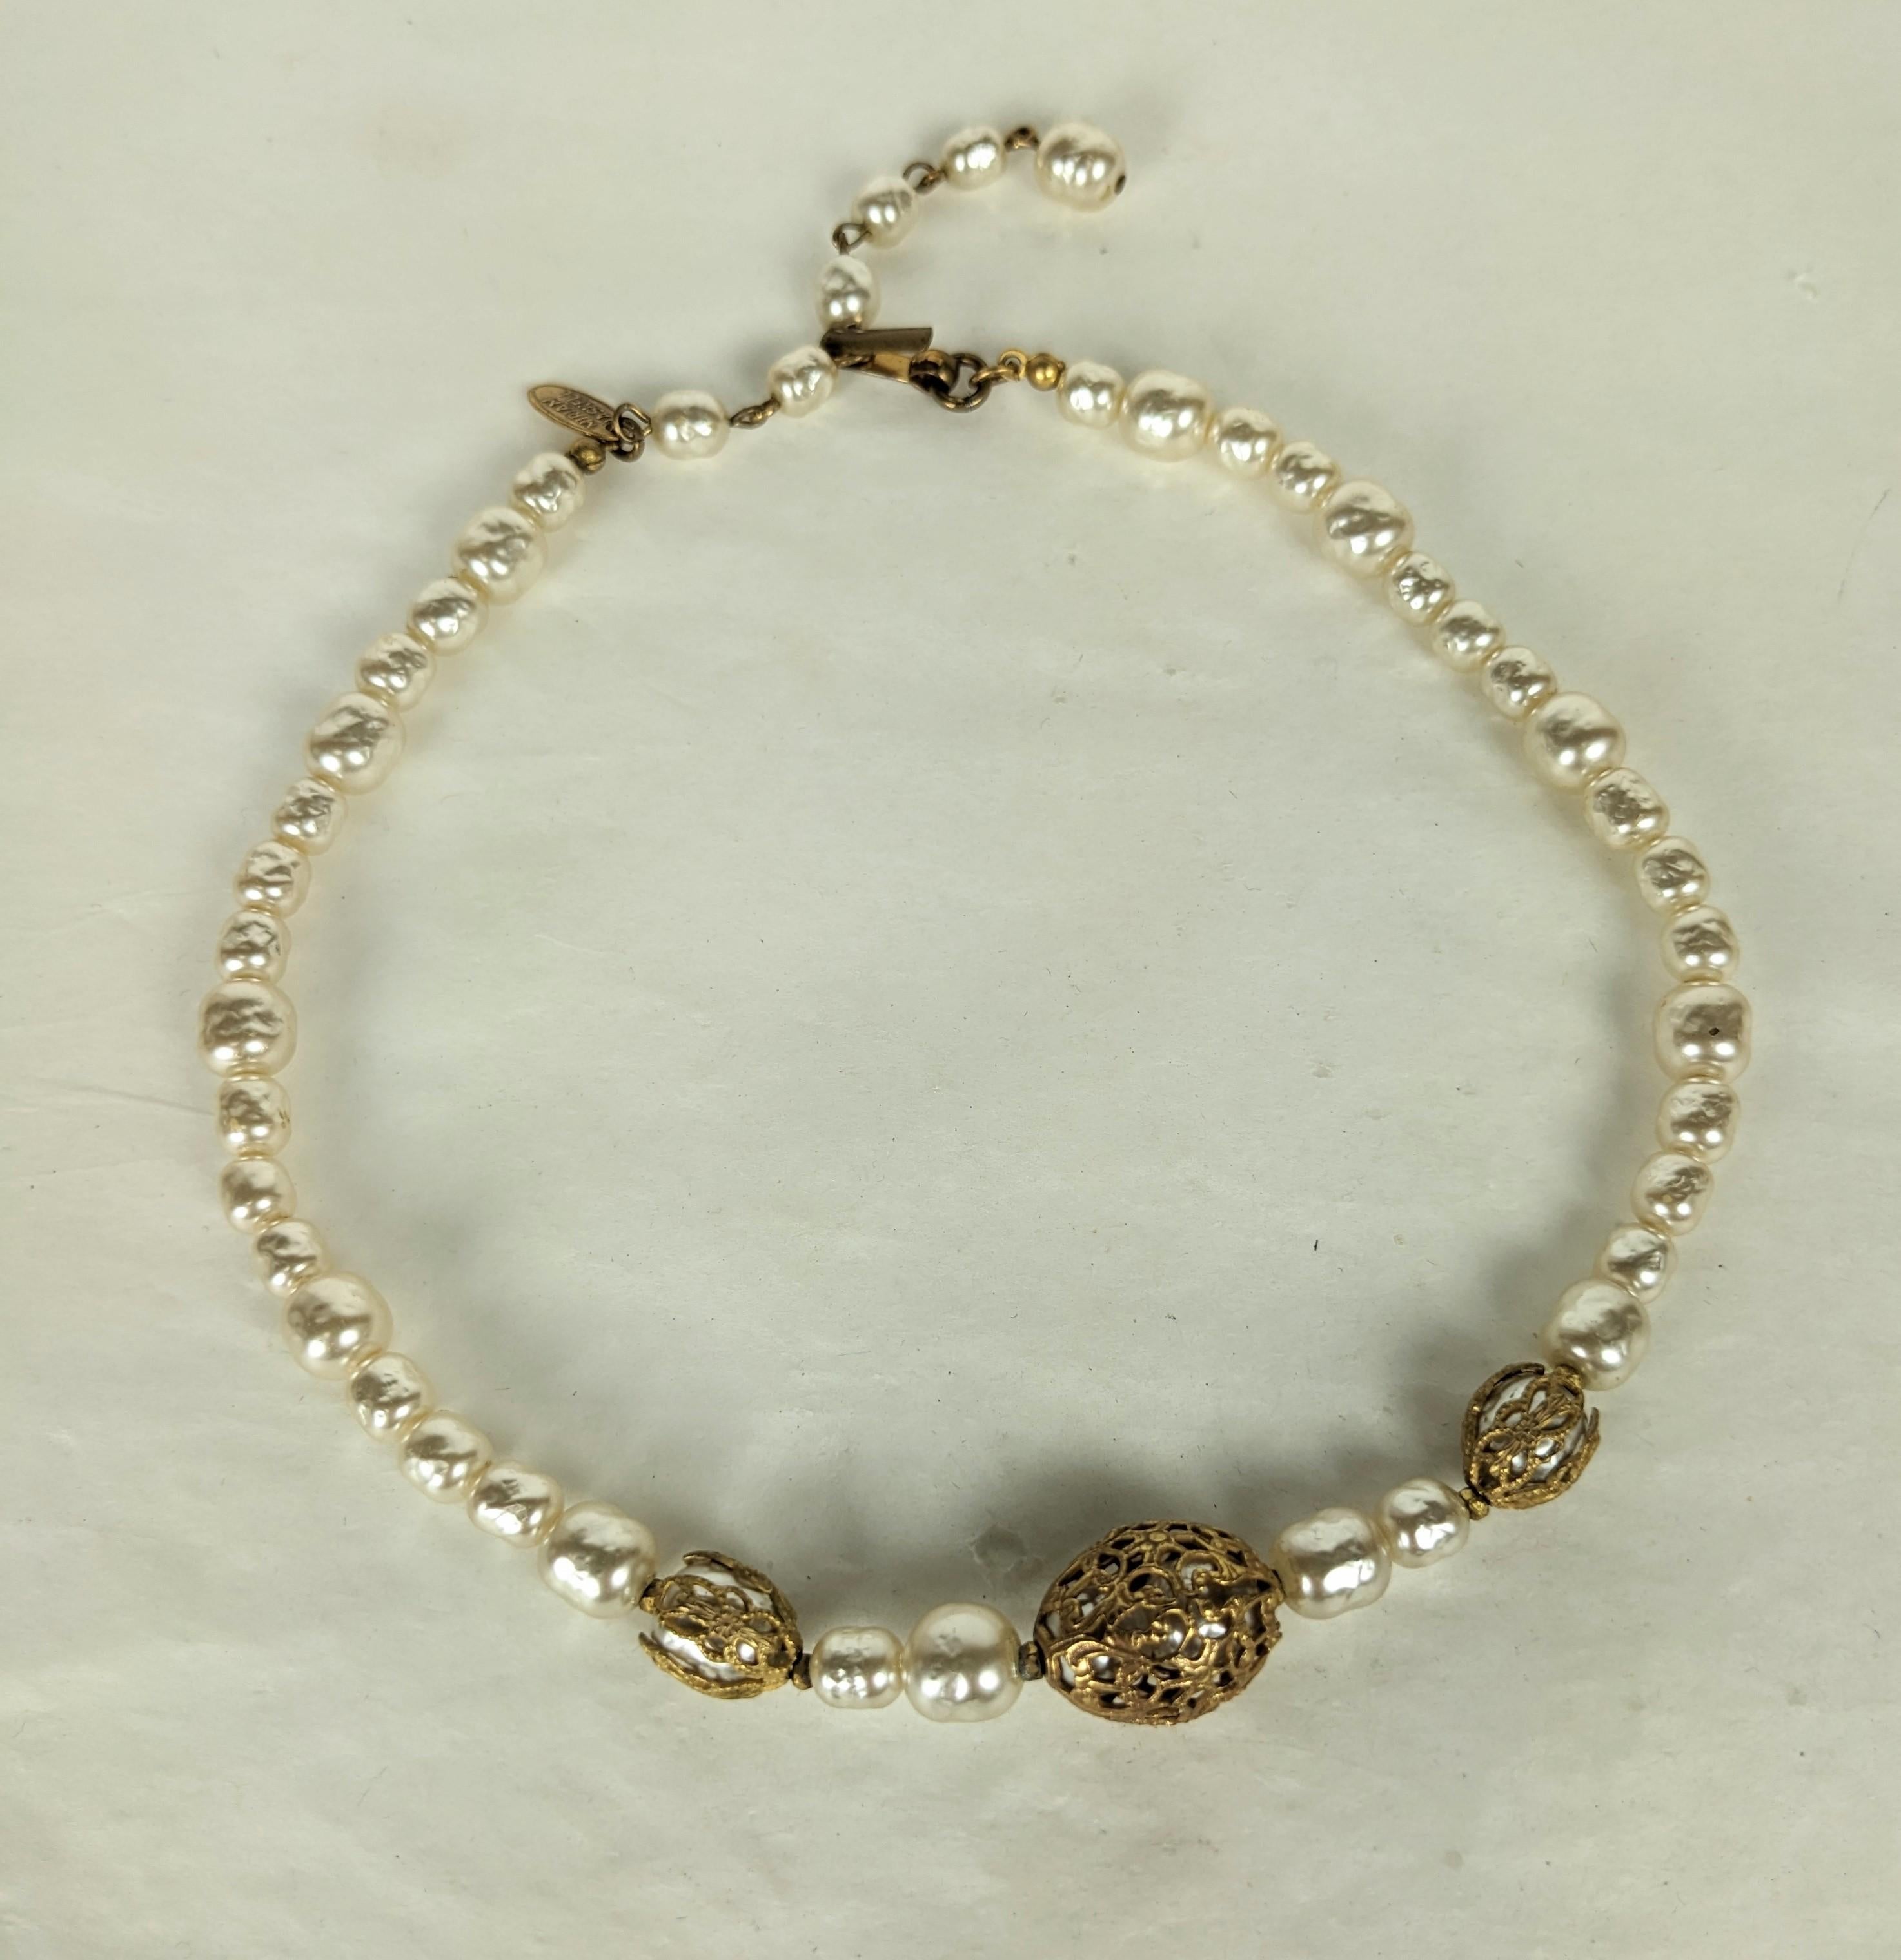 Elegante Miriam Haskell Signatur Barock Perle und russische Goldplatte filigrane Halskette mit Käfig Perlen in filigranen Kappen gewickelt. Hakenverschluss und Verlängerungsstück. Ausgezeichneter Zustand, signiert. Länge 14,25